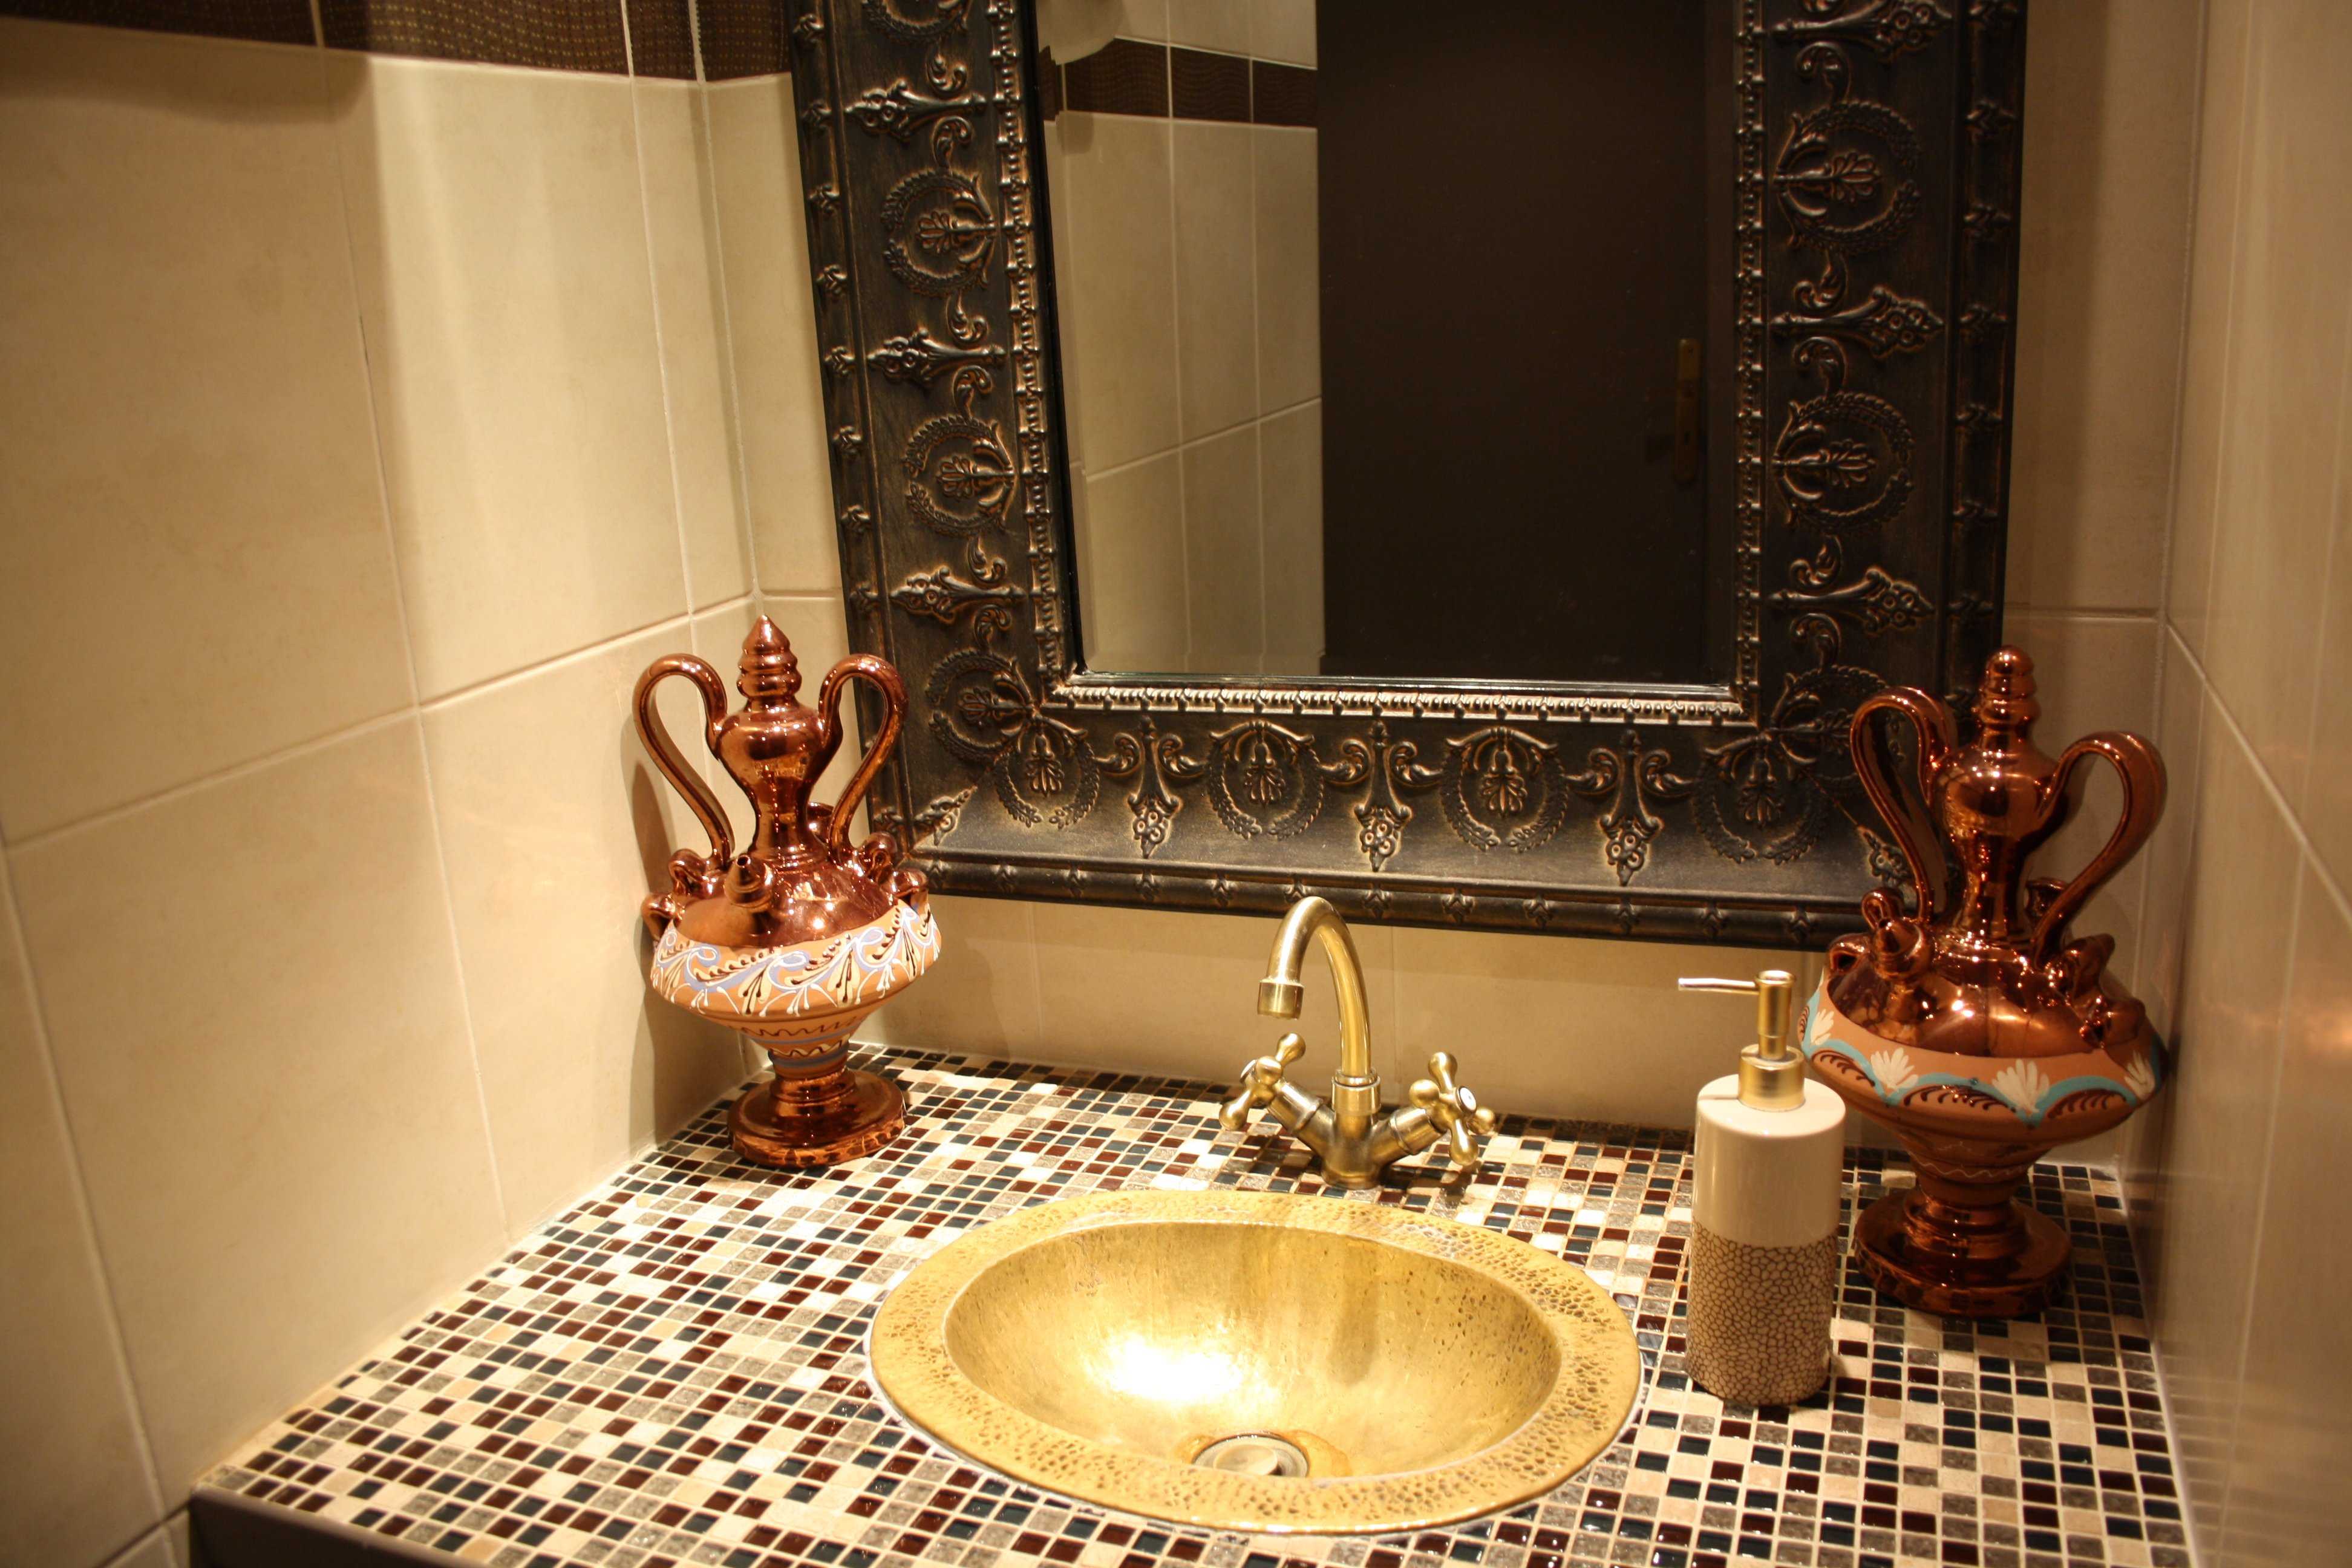 Ванная комната в марокканском стиле, фото абрабского и египетского дизайнов